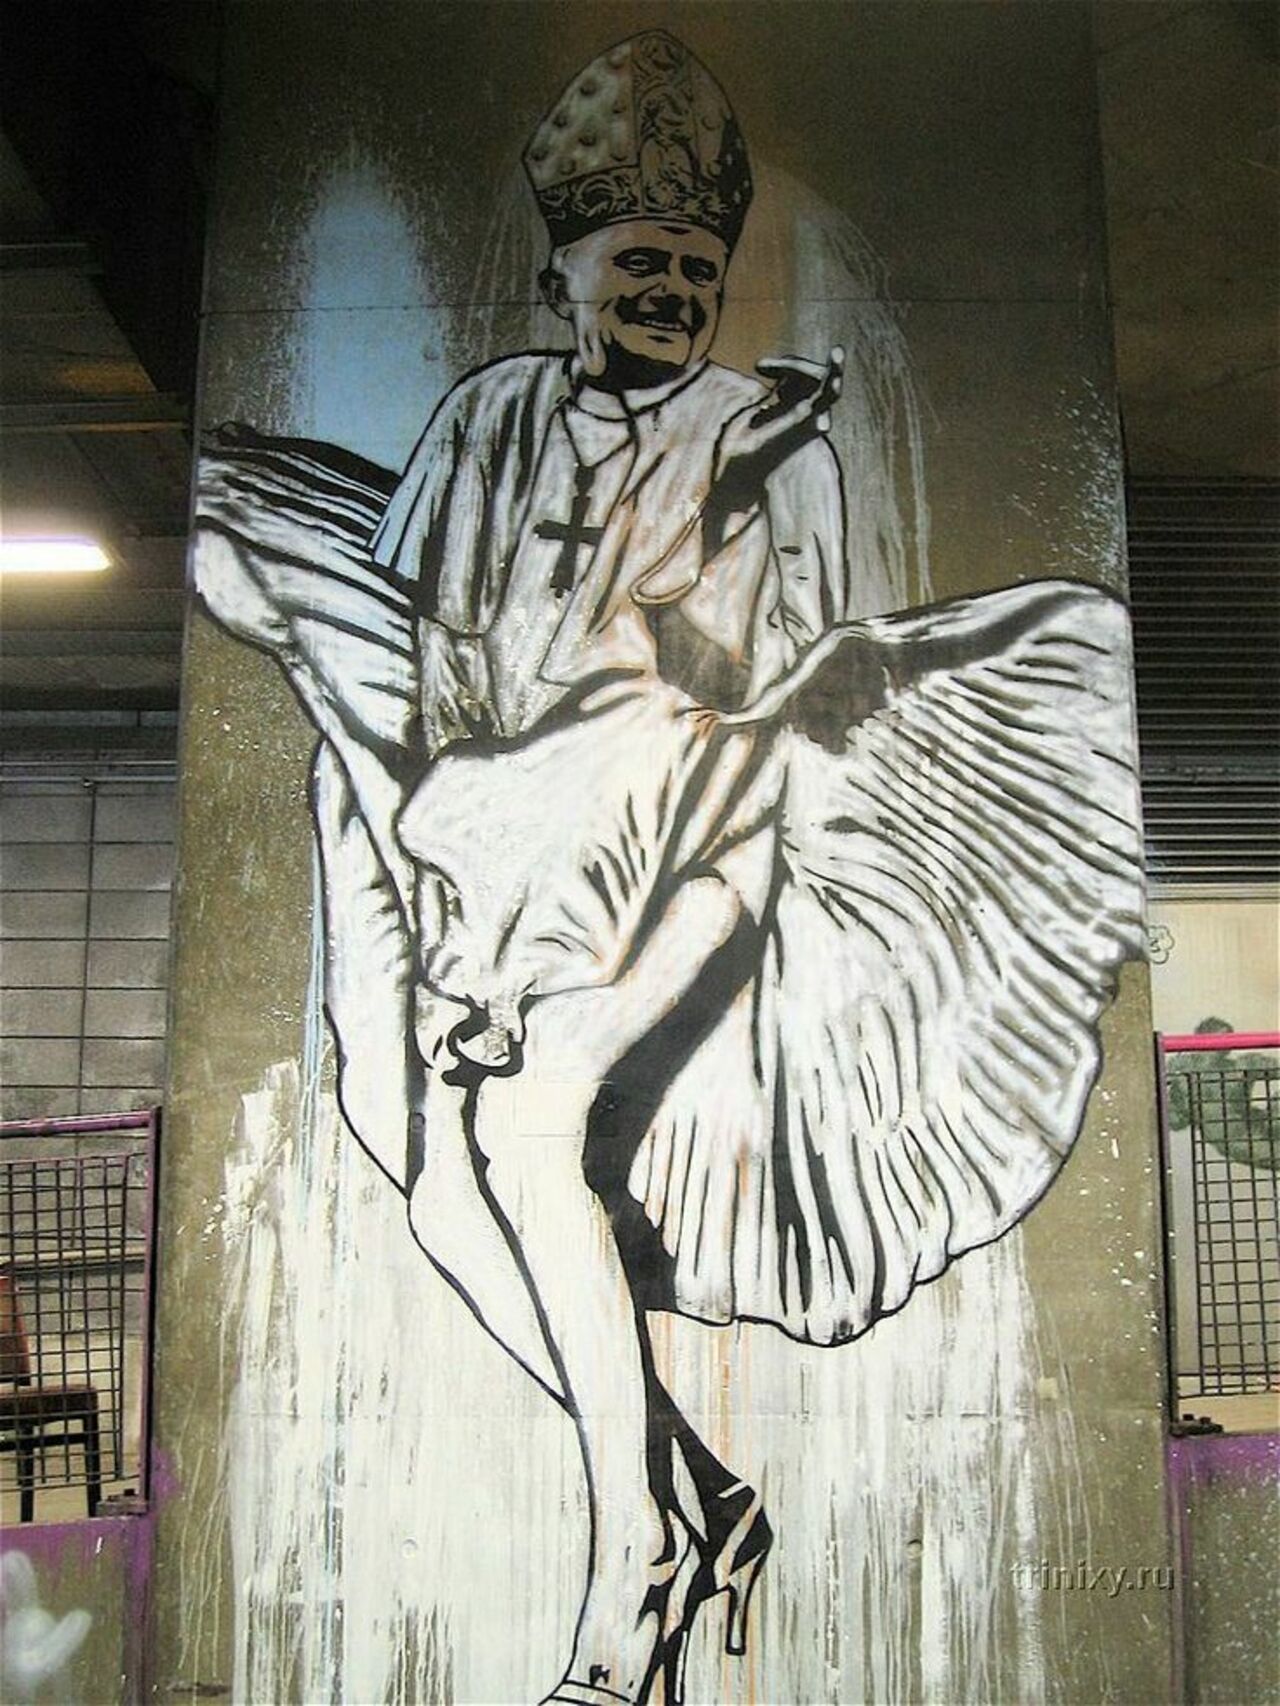 Banksy #streetart #mural #graffiti https://t.co/xAhaaJfiTF